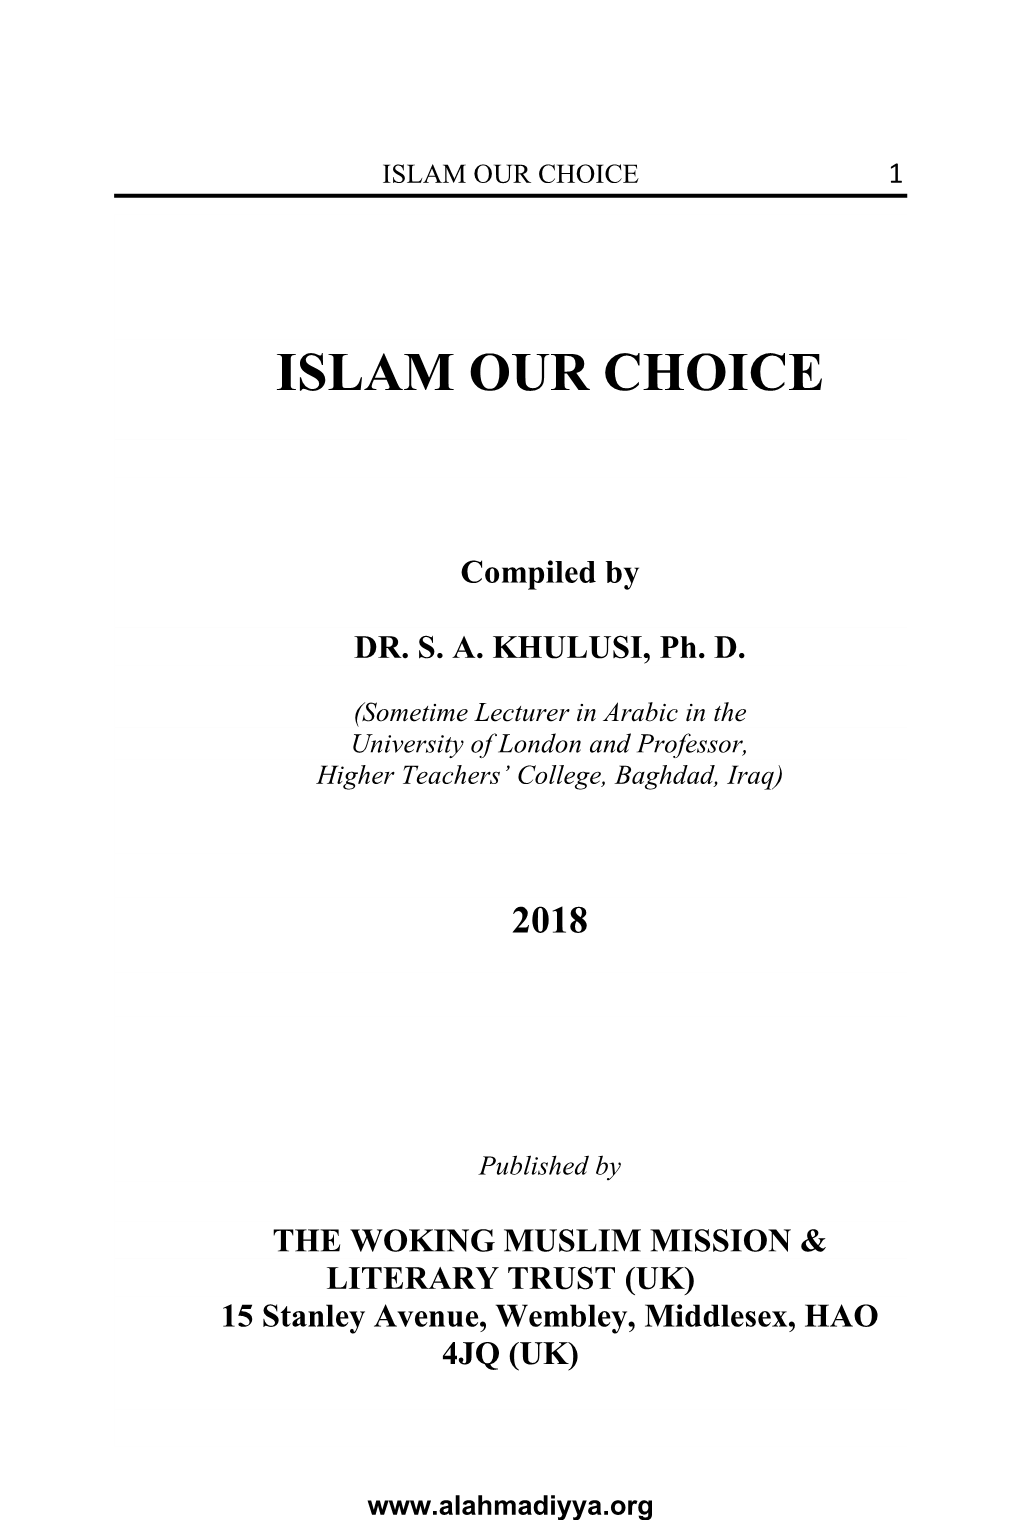 Islam — Our Choice